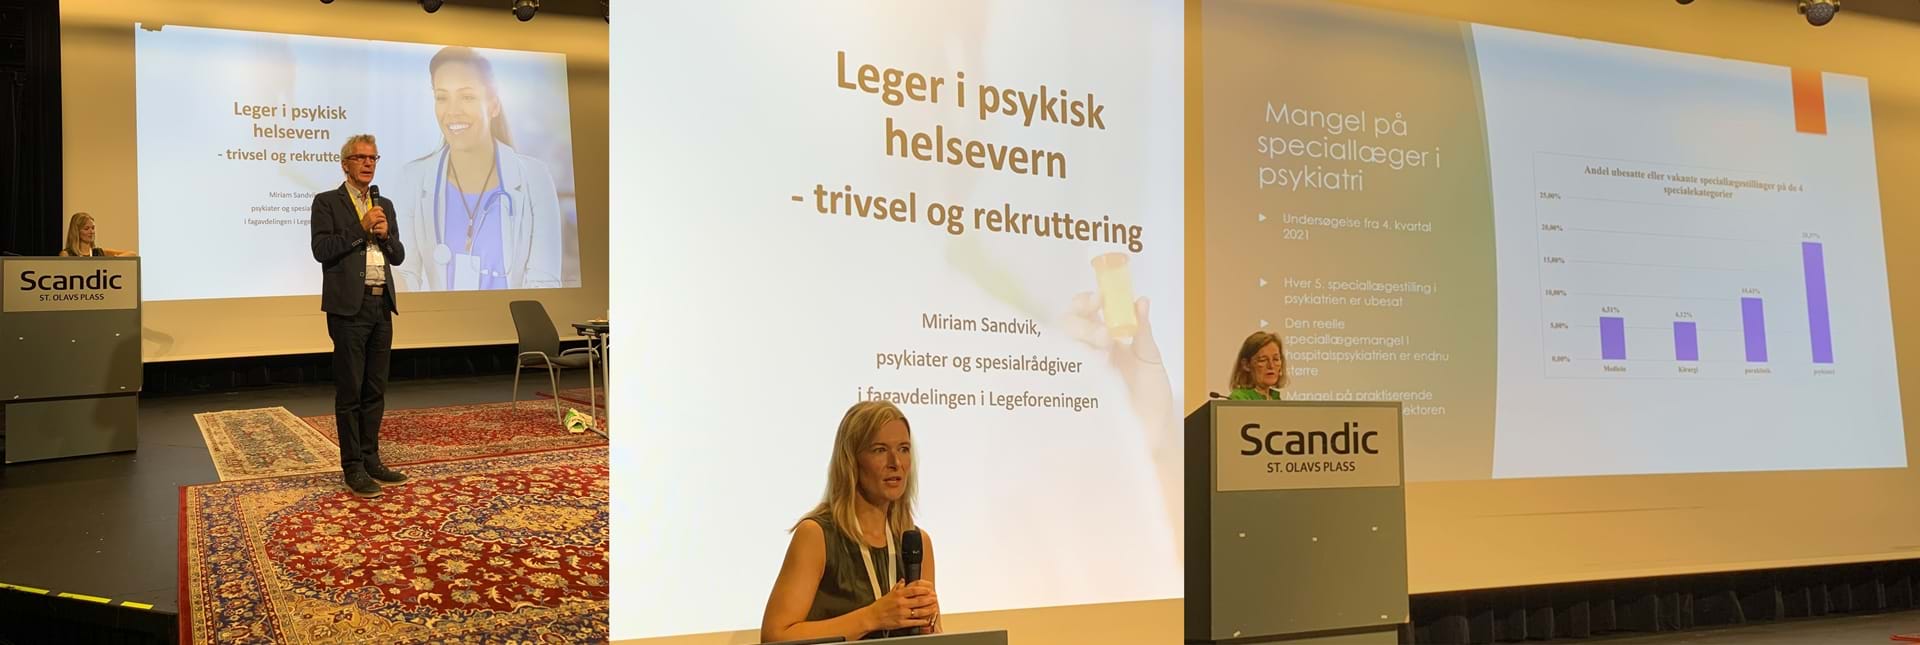 Fra venstre: Lars Lien med innledningsforedrag, Miriam Sandvik fra Legeforeningen og dansk kollega Lene H&#248;gh. Foto: Anne Kristine Bergem.